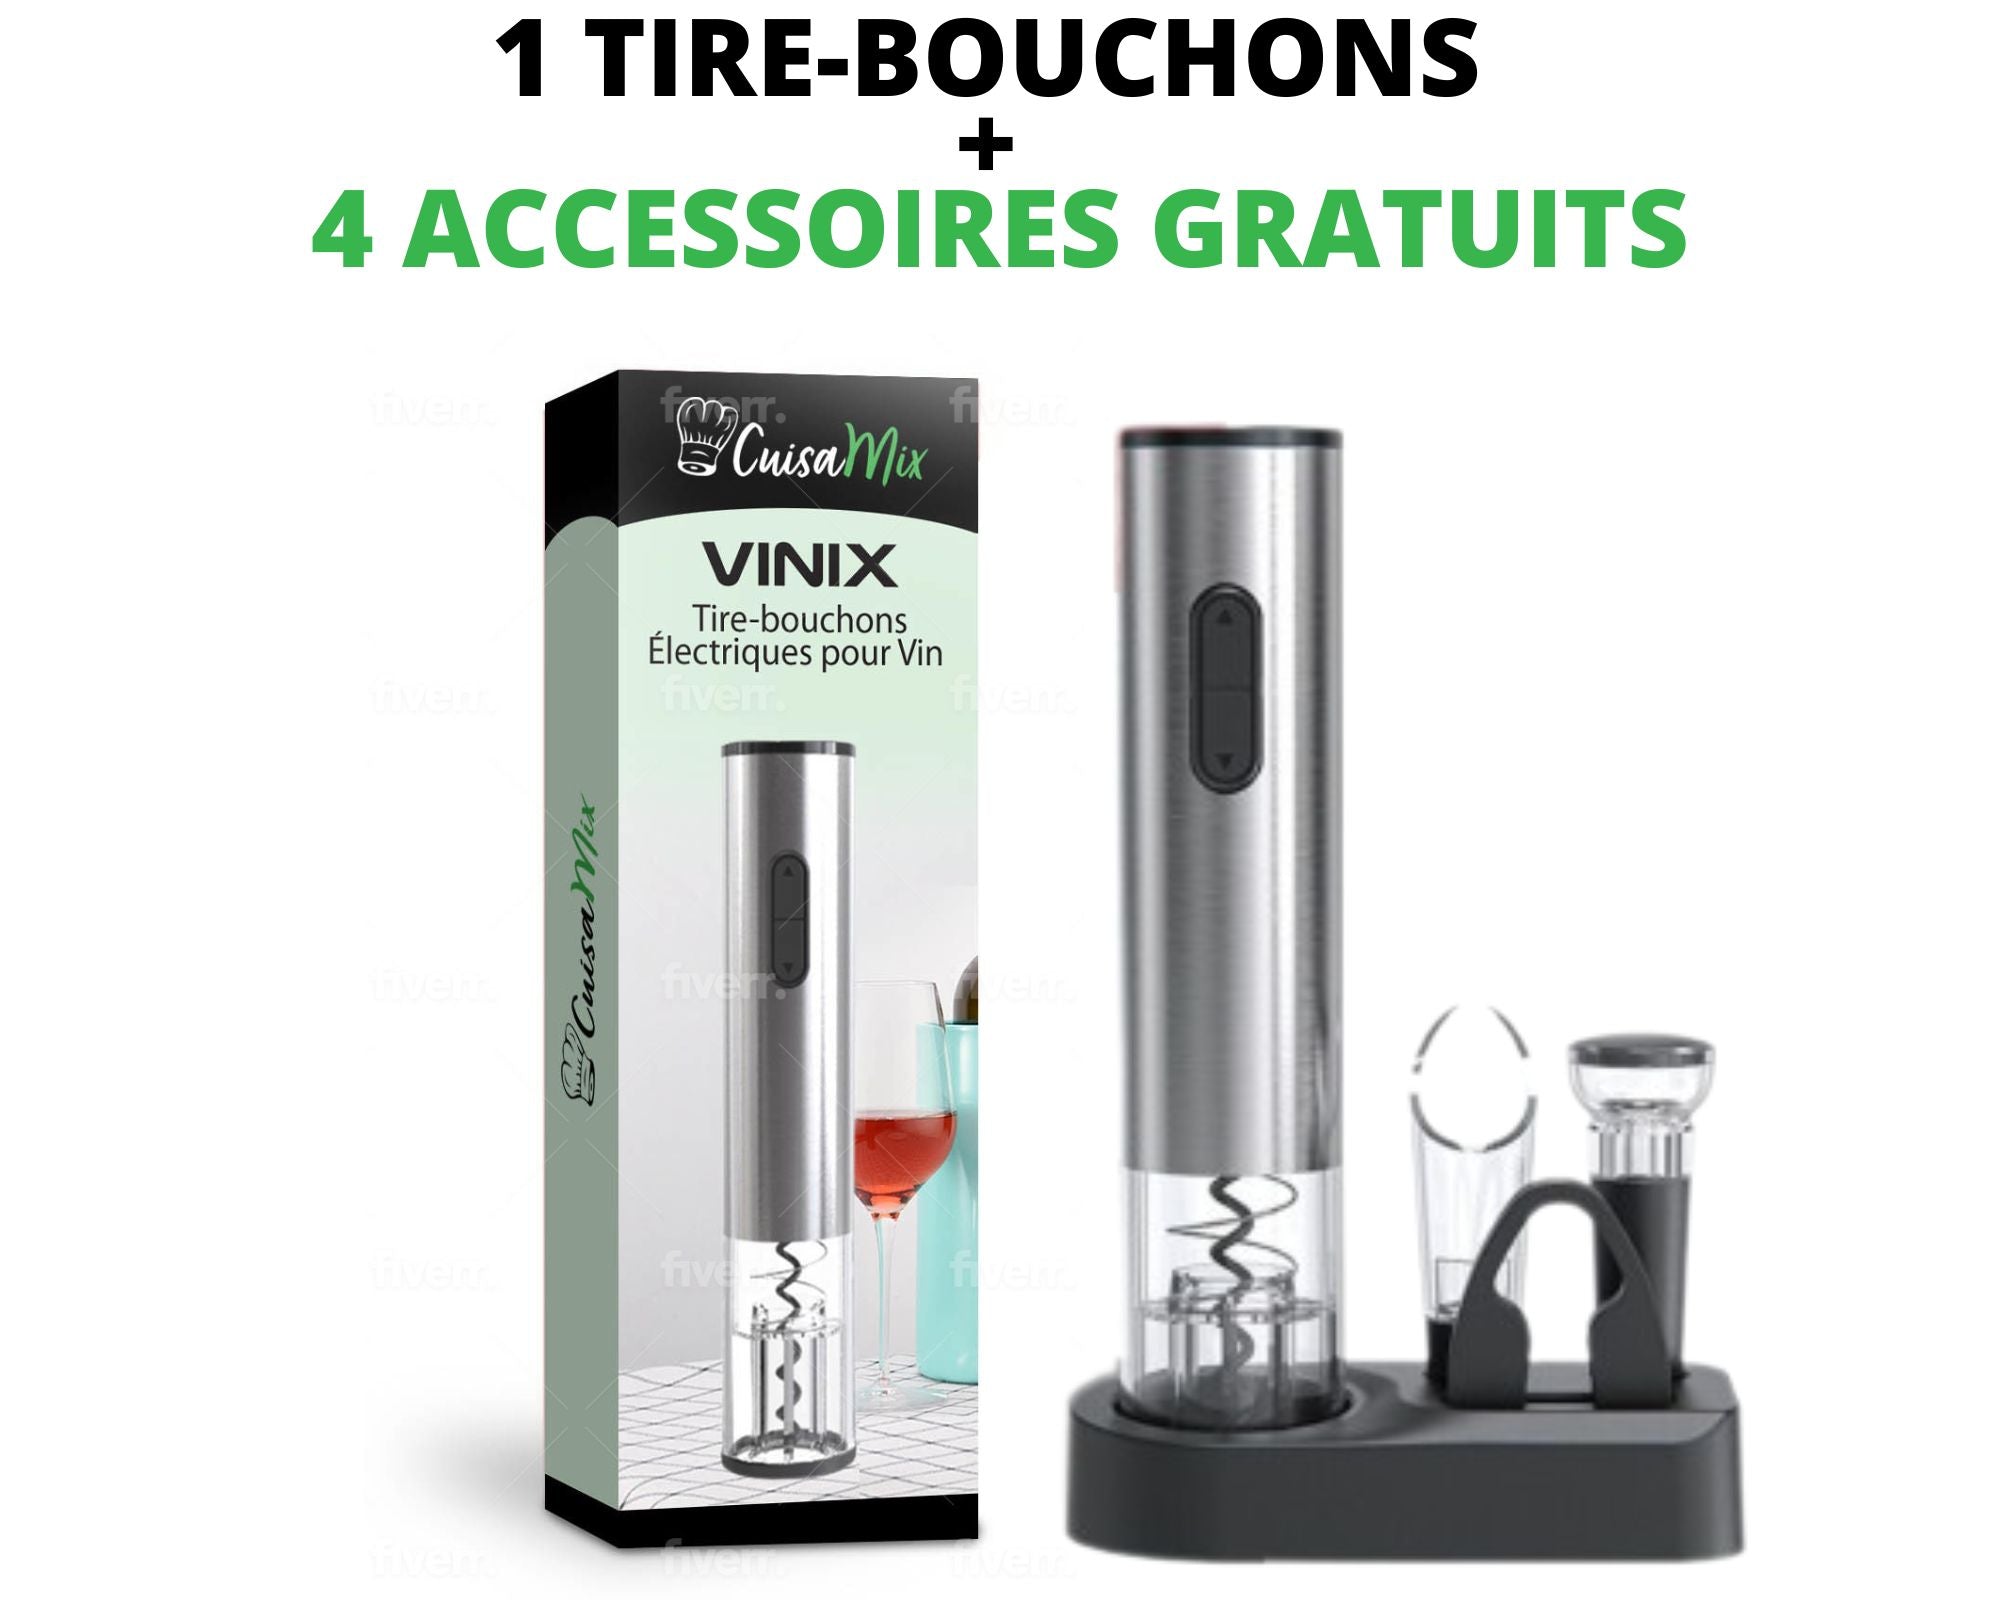 Vinix - Tire-bouchons Électriques pour Vin (+4 Accessoires OFFERTS)